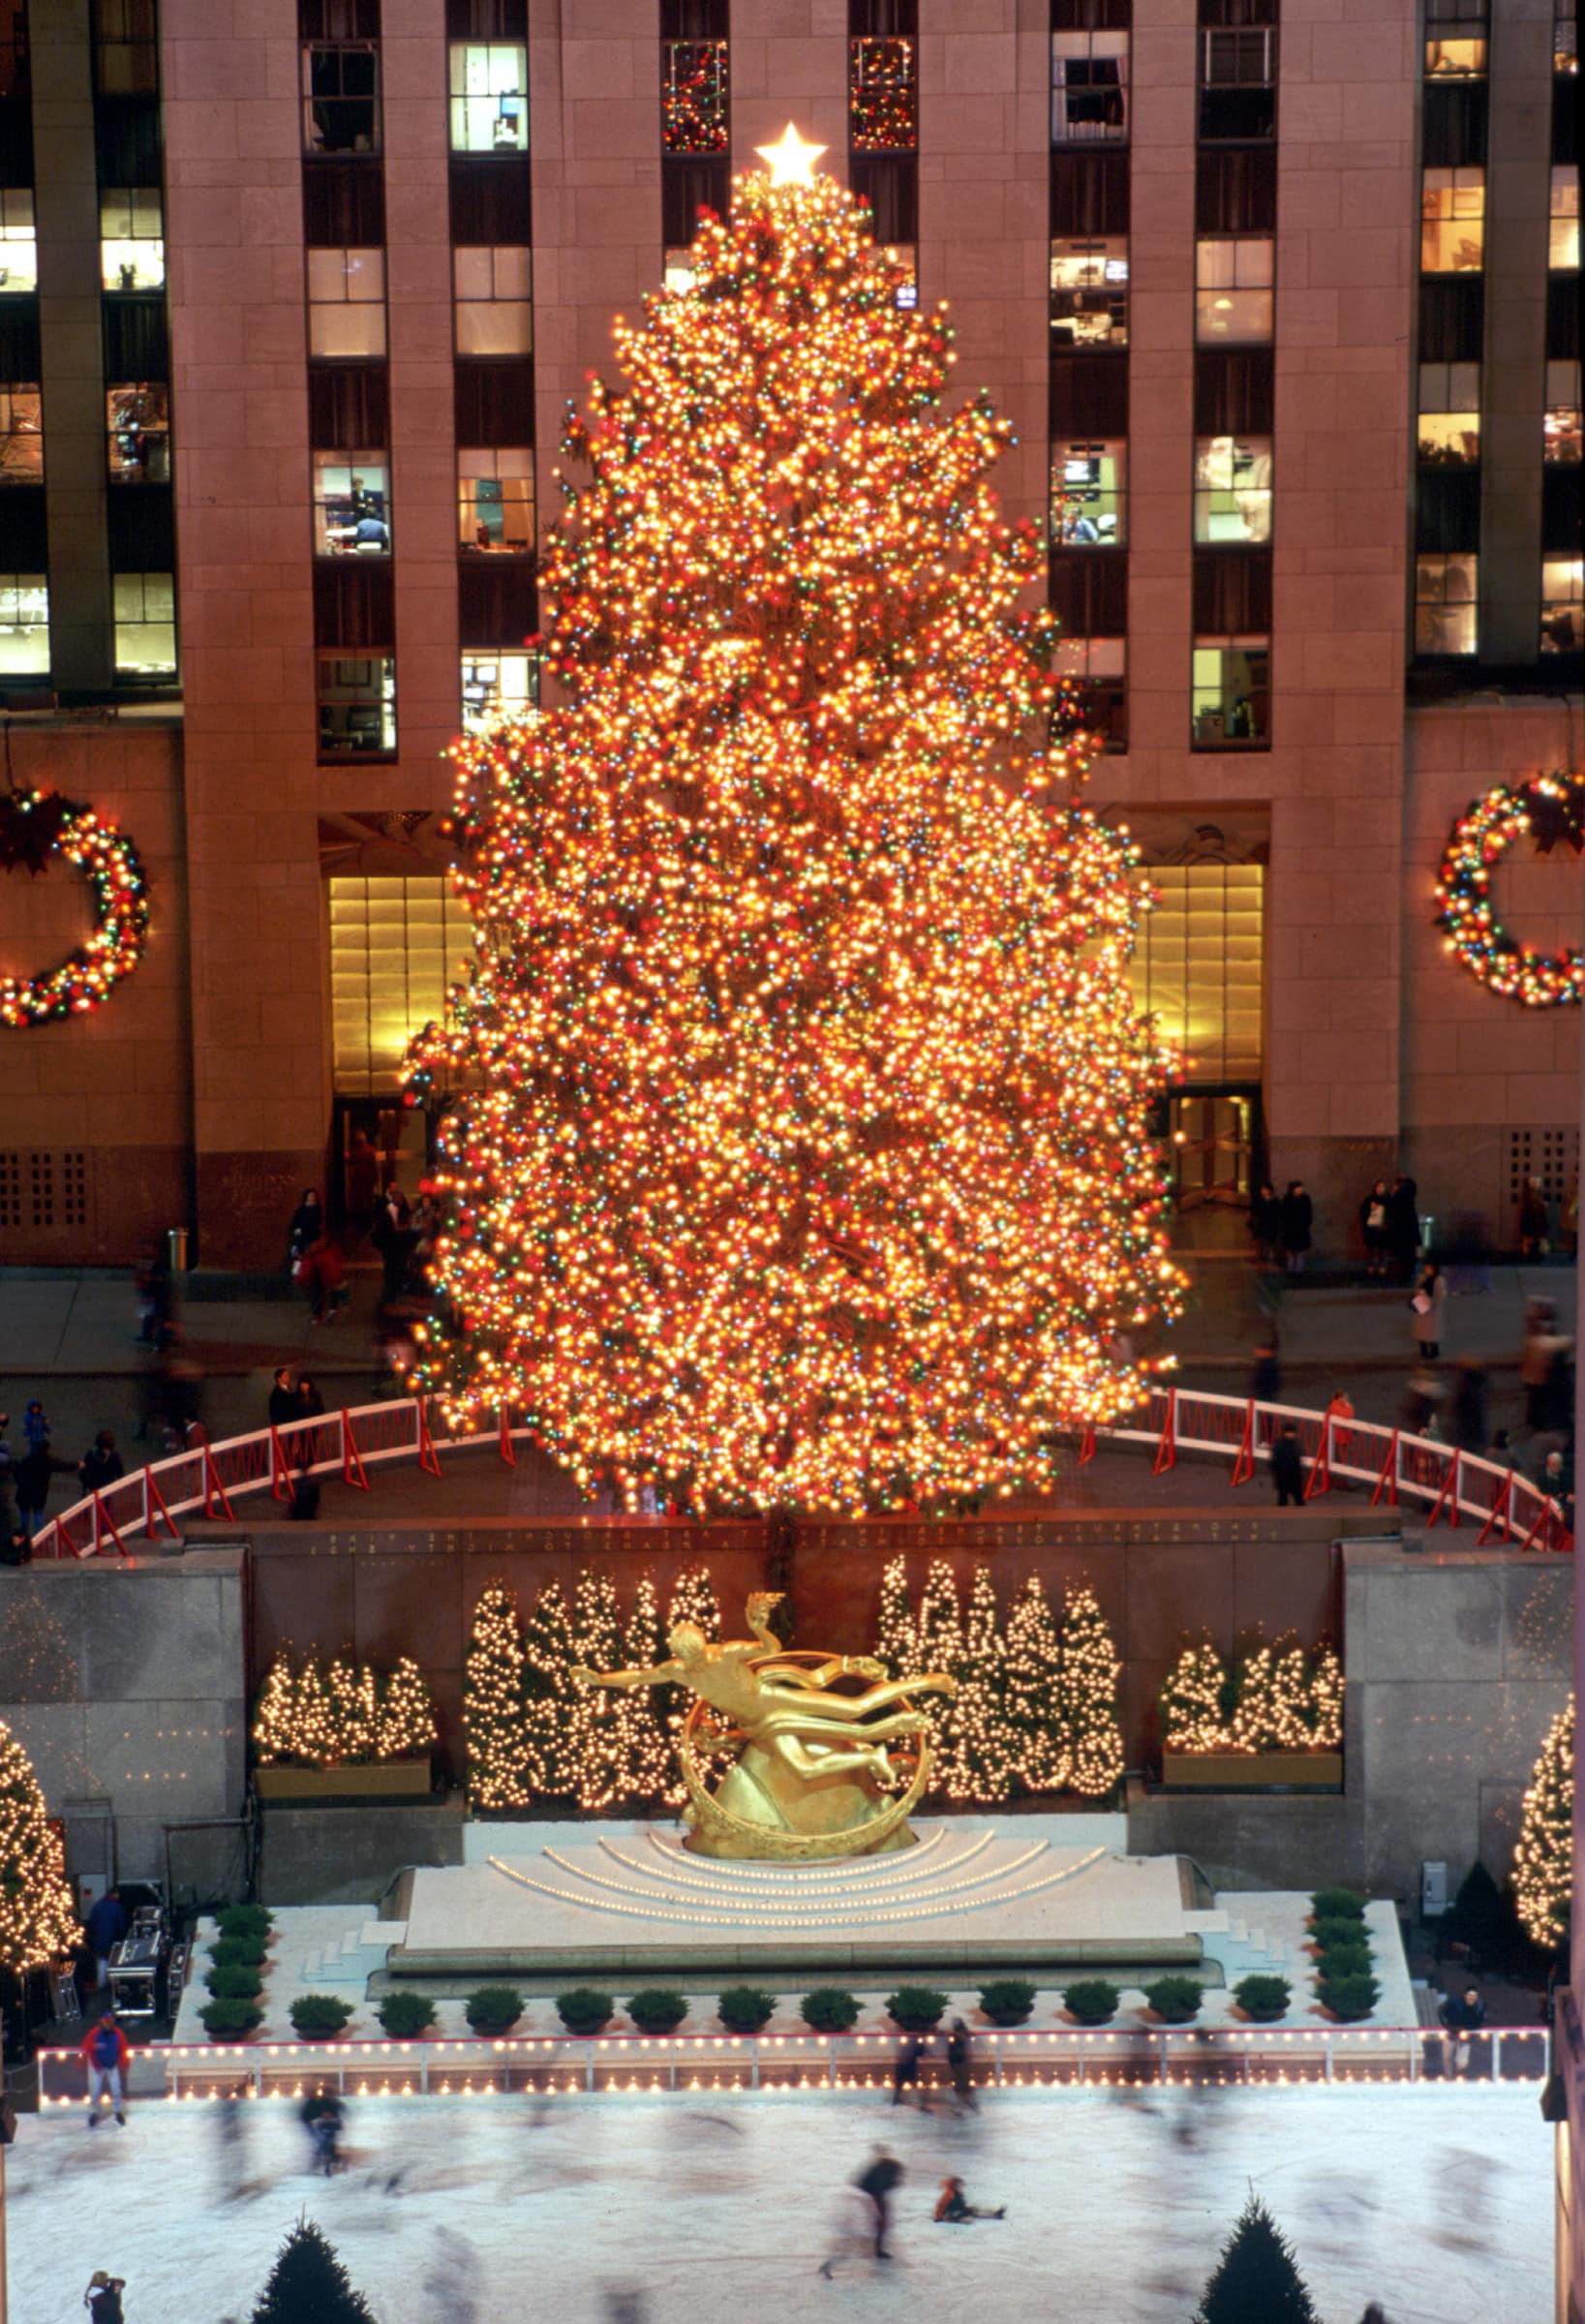 1998's Rockefeller Center lighting